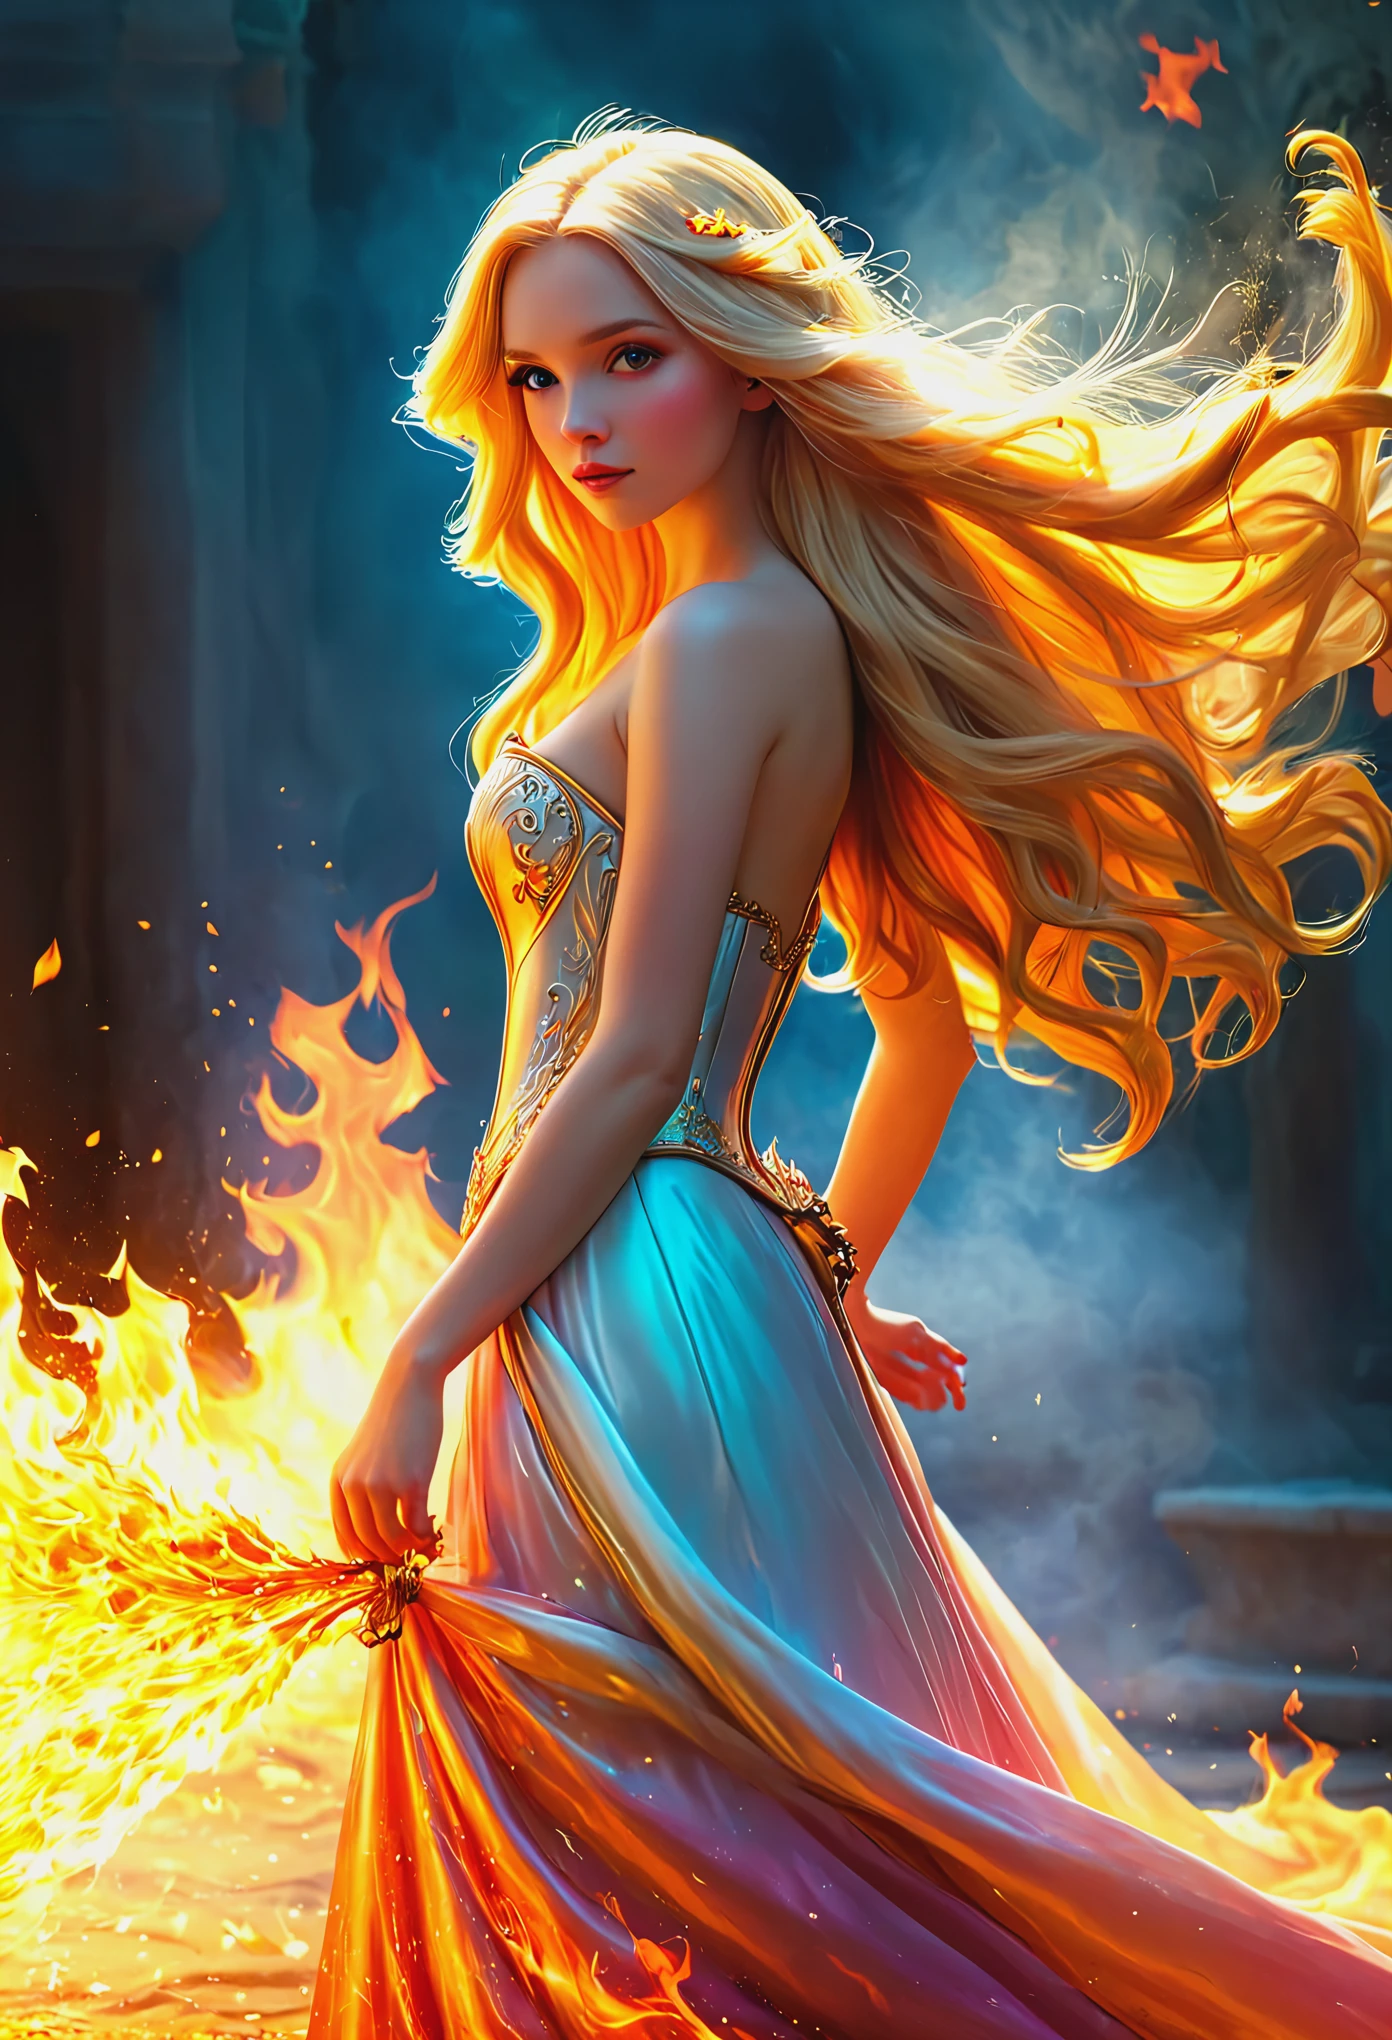 불에 휩싸인 공주 의상을 입은 긴 머리의 금발